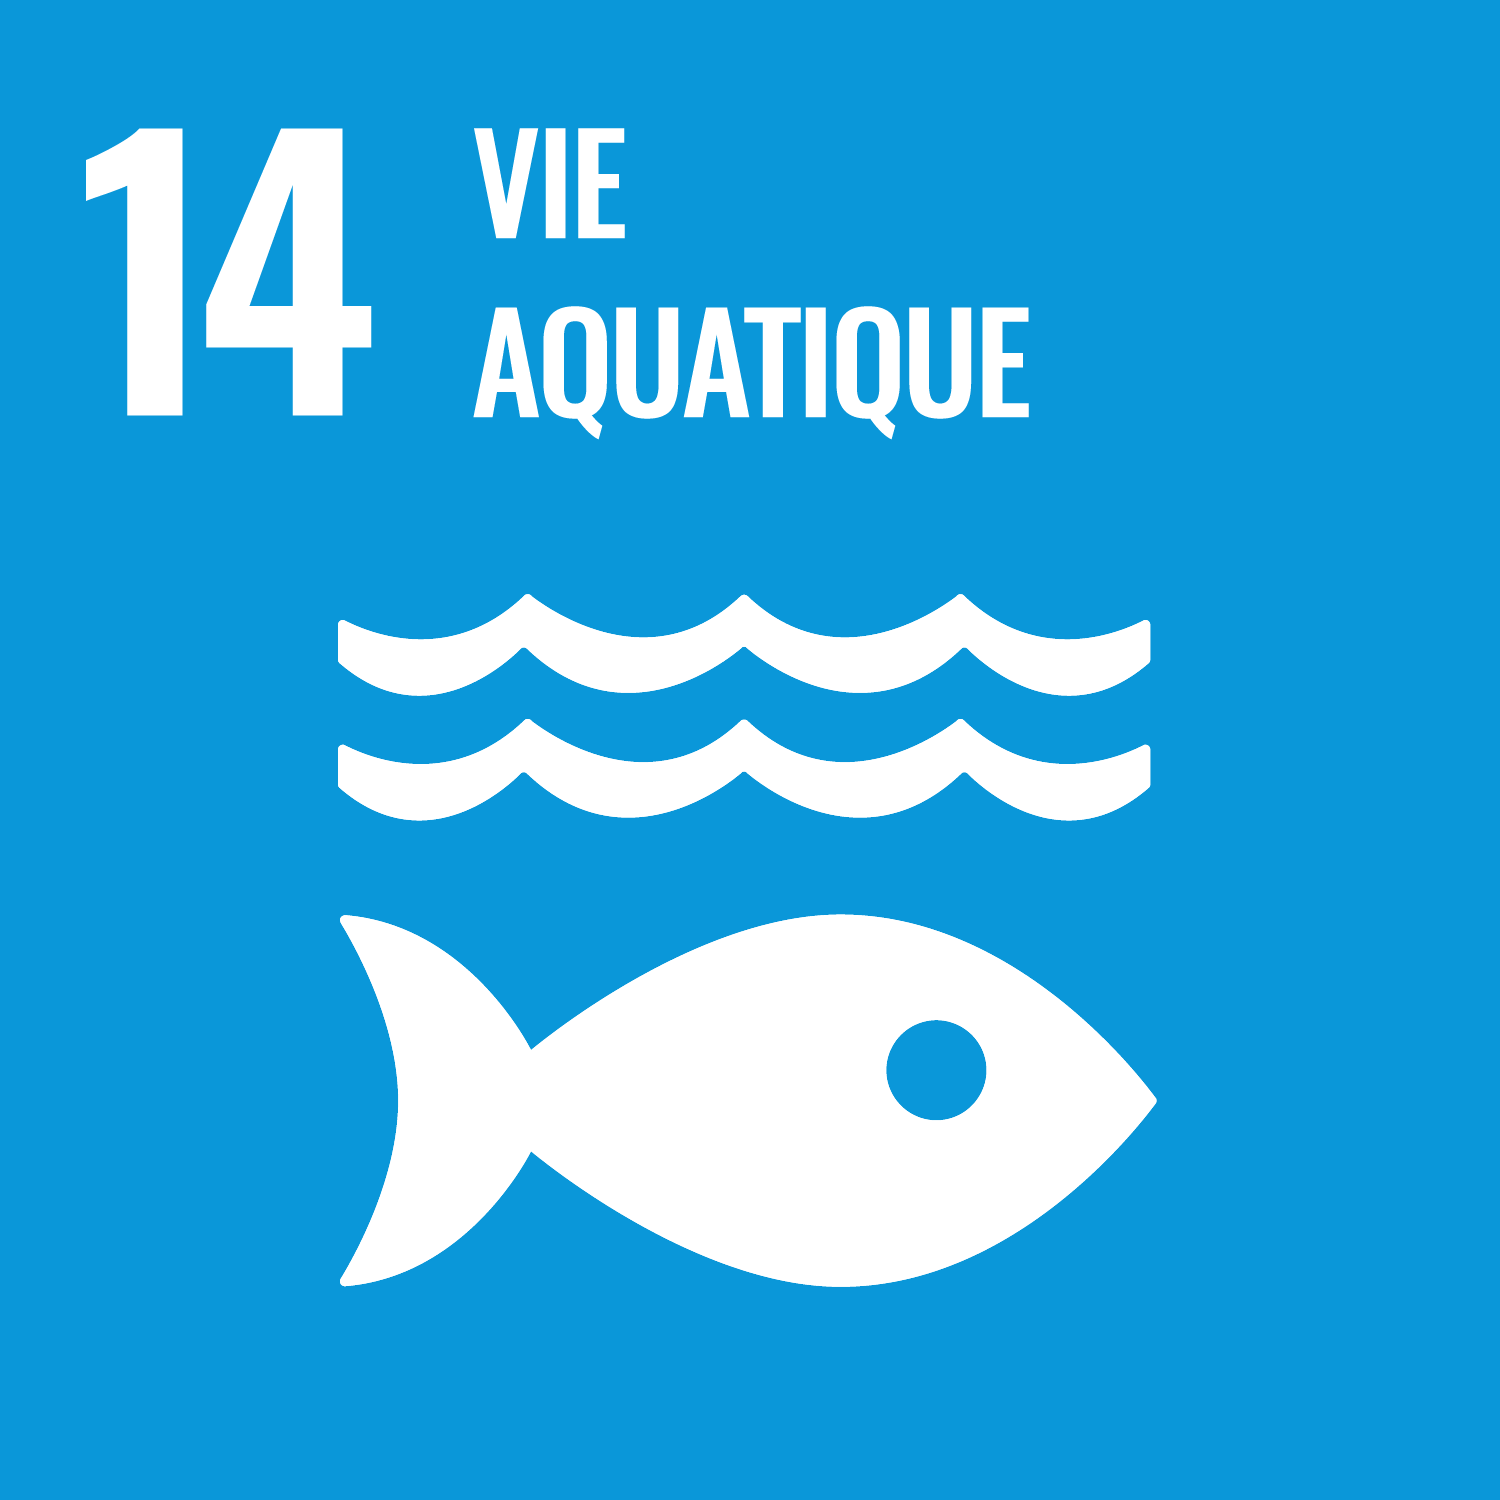 Objectif de développement durable 14: Vie aquatique;